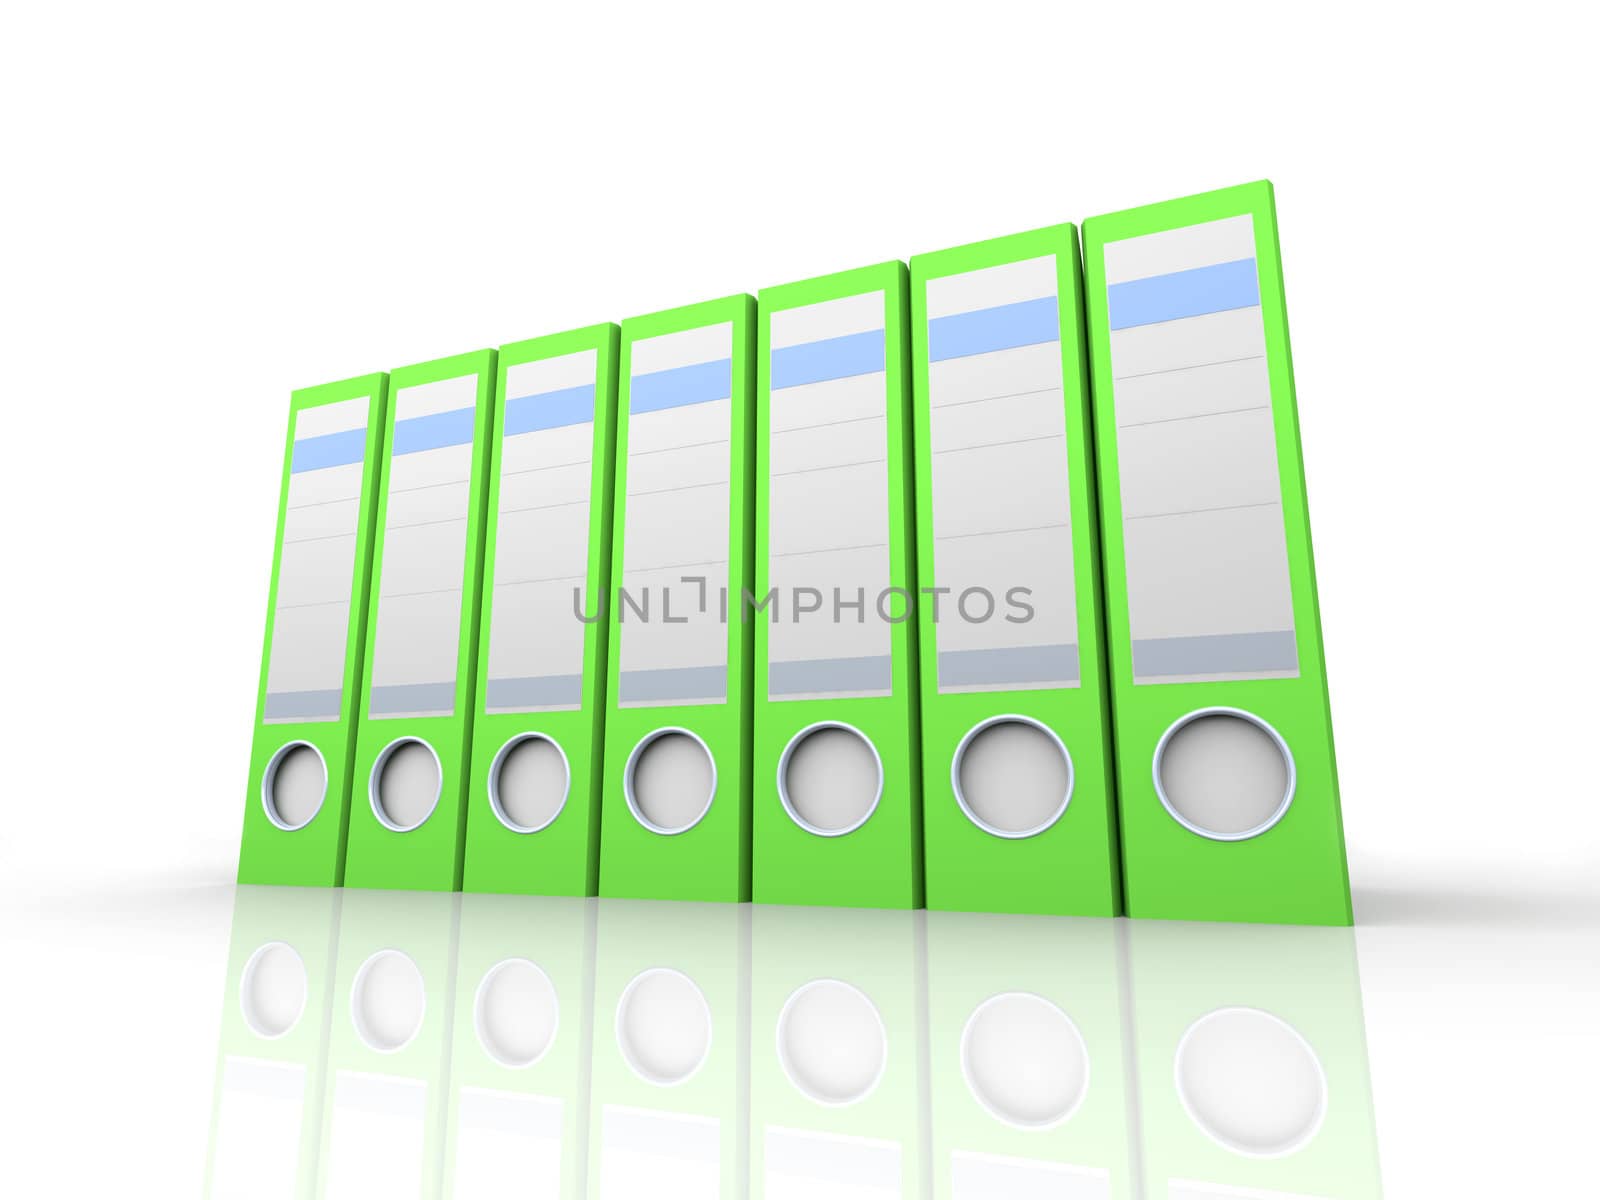 File Folders by Spectral